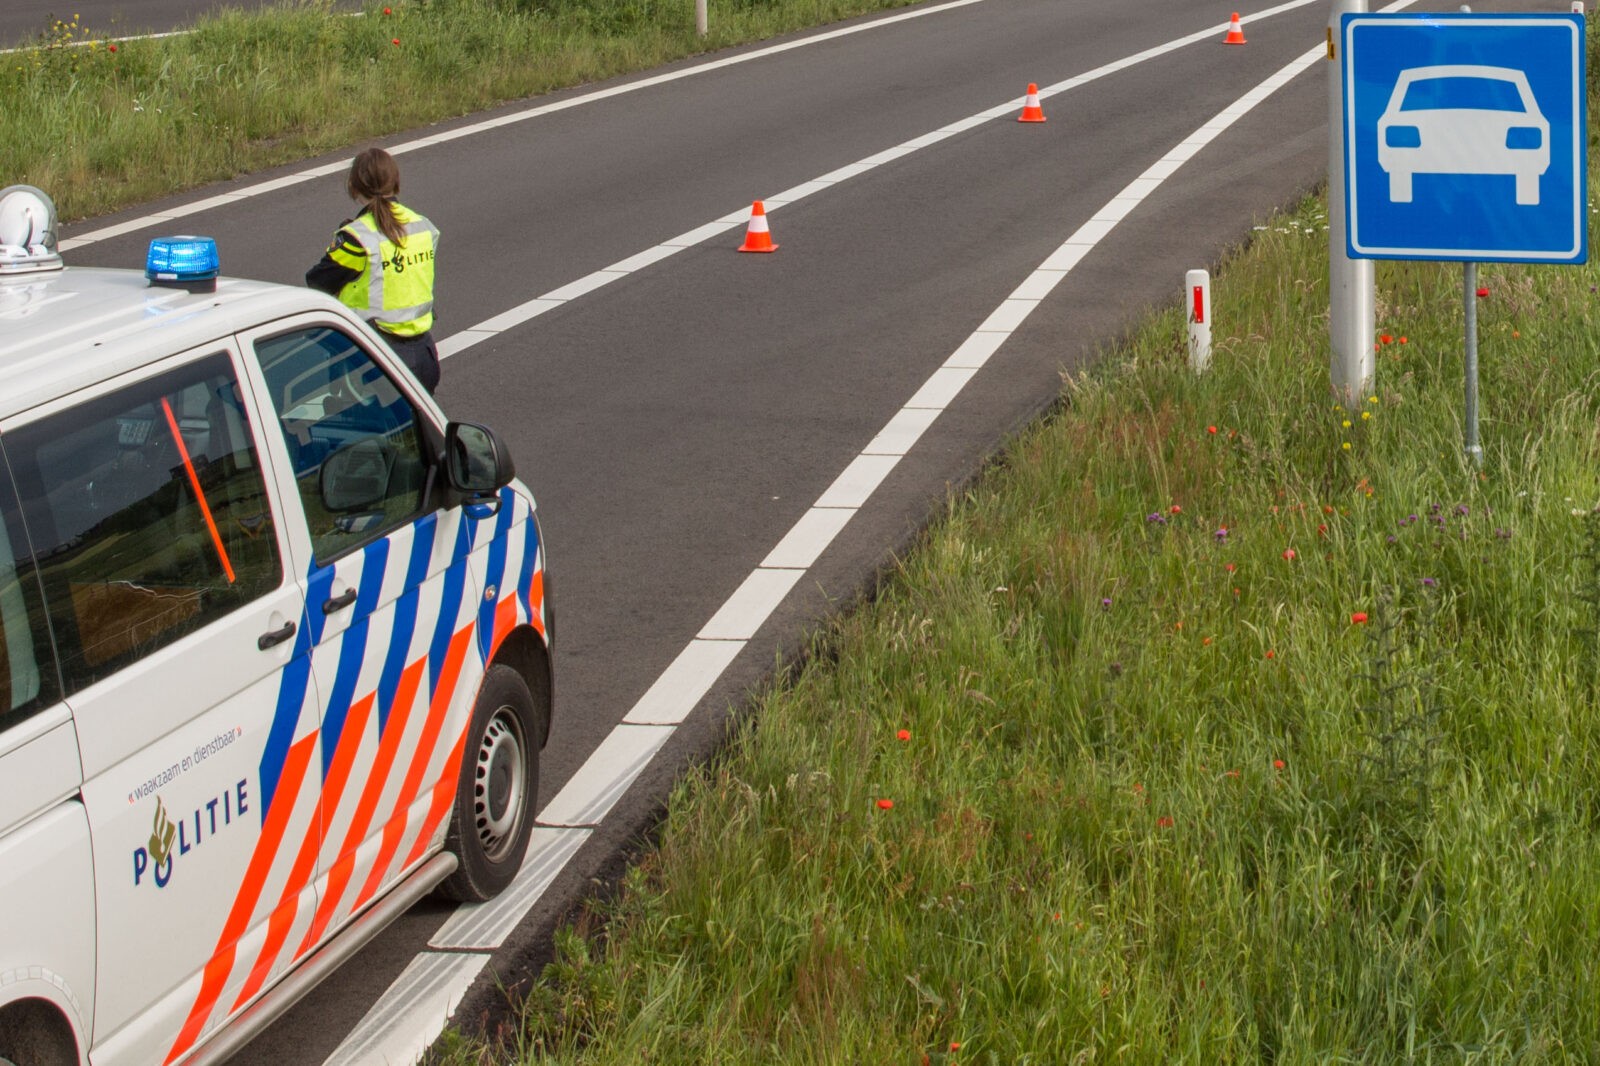 Ernstig verkeersongeval op A2: Zilvergrijze BMW gezocht na vermoedelijke verkeersruzie.